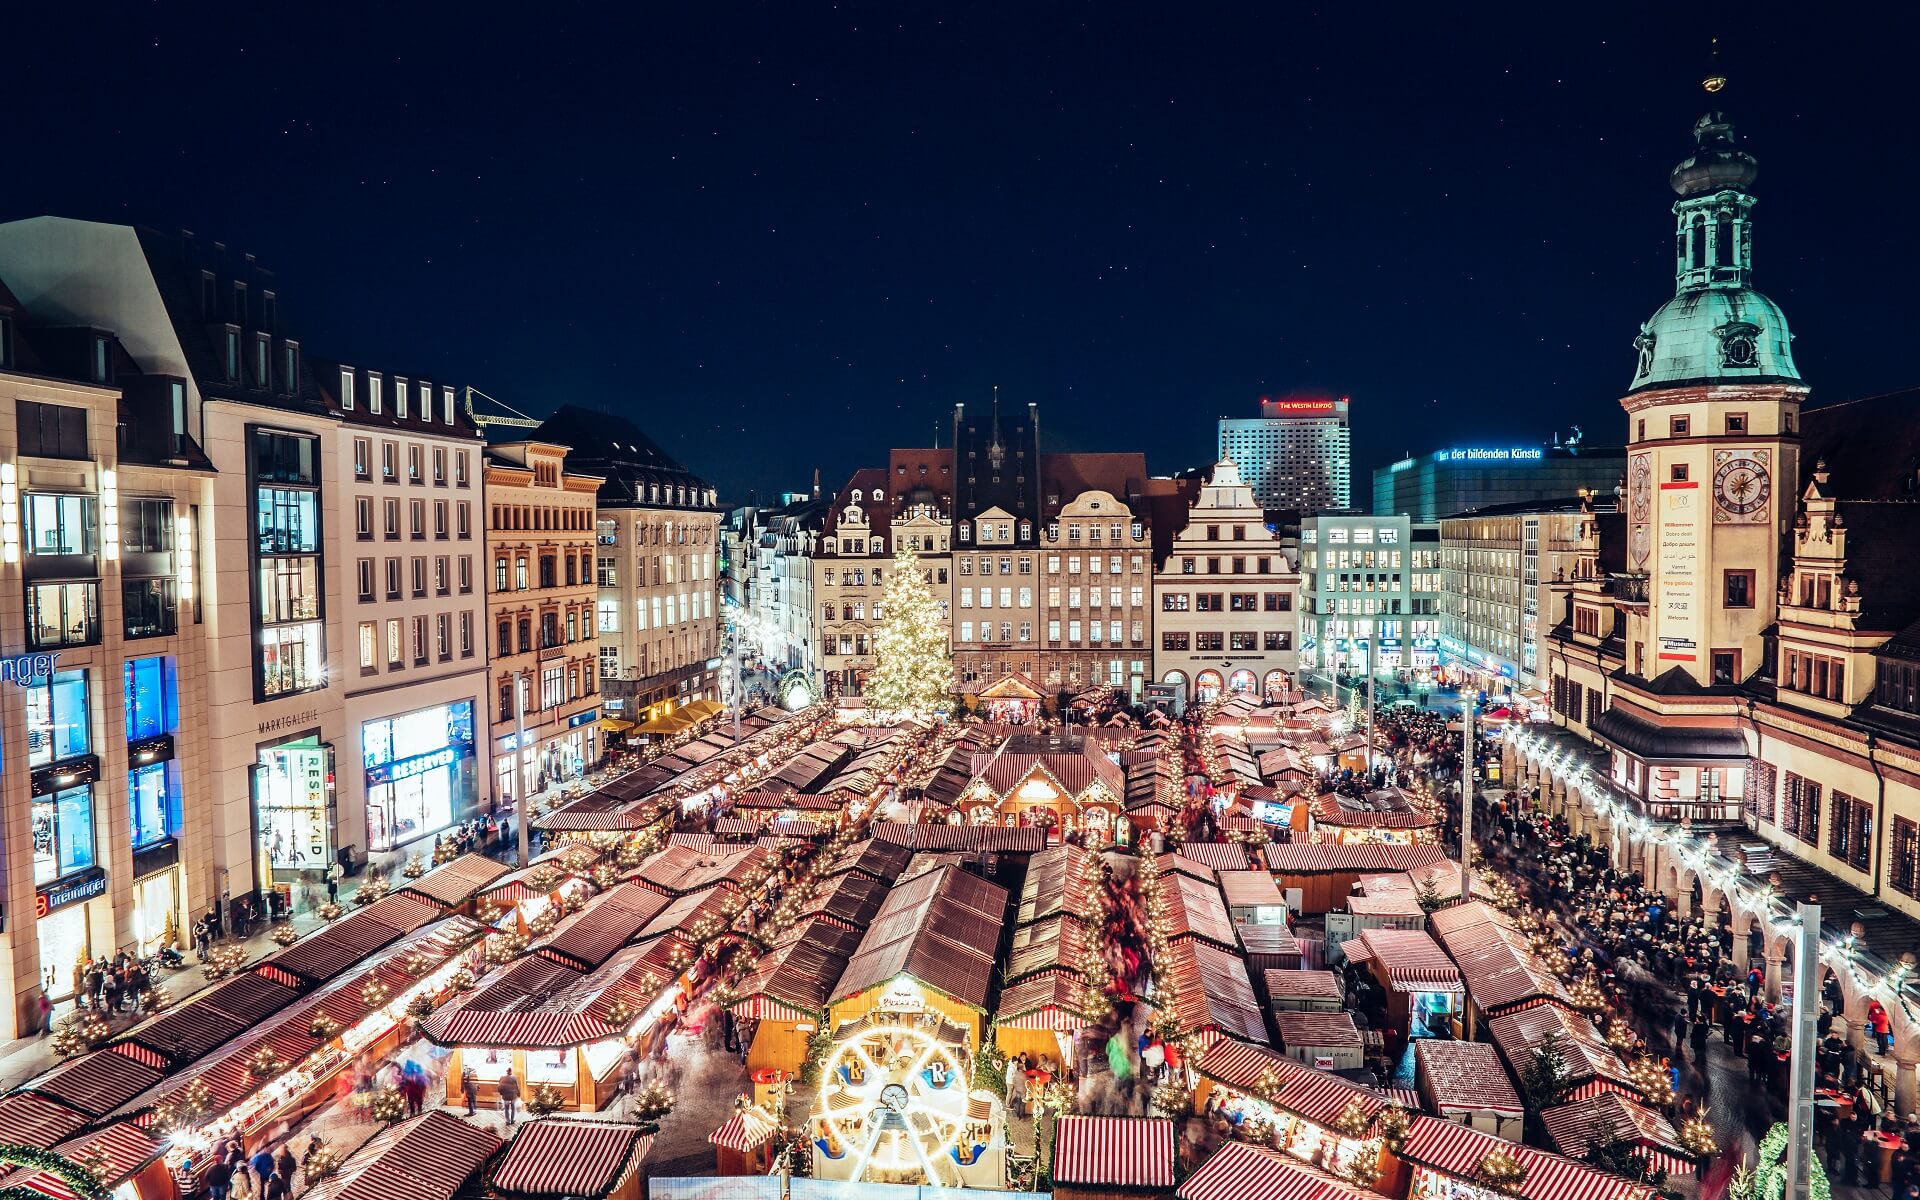 Weihnachtsmarkt-Marktplatz_DanielKoehlerFN-1.jpg